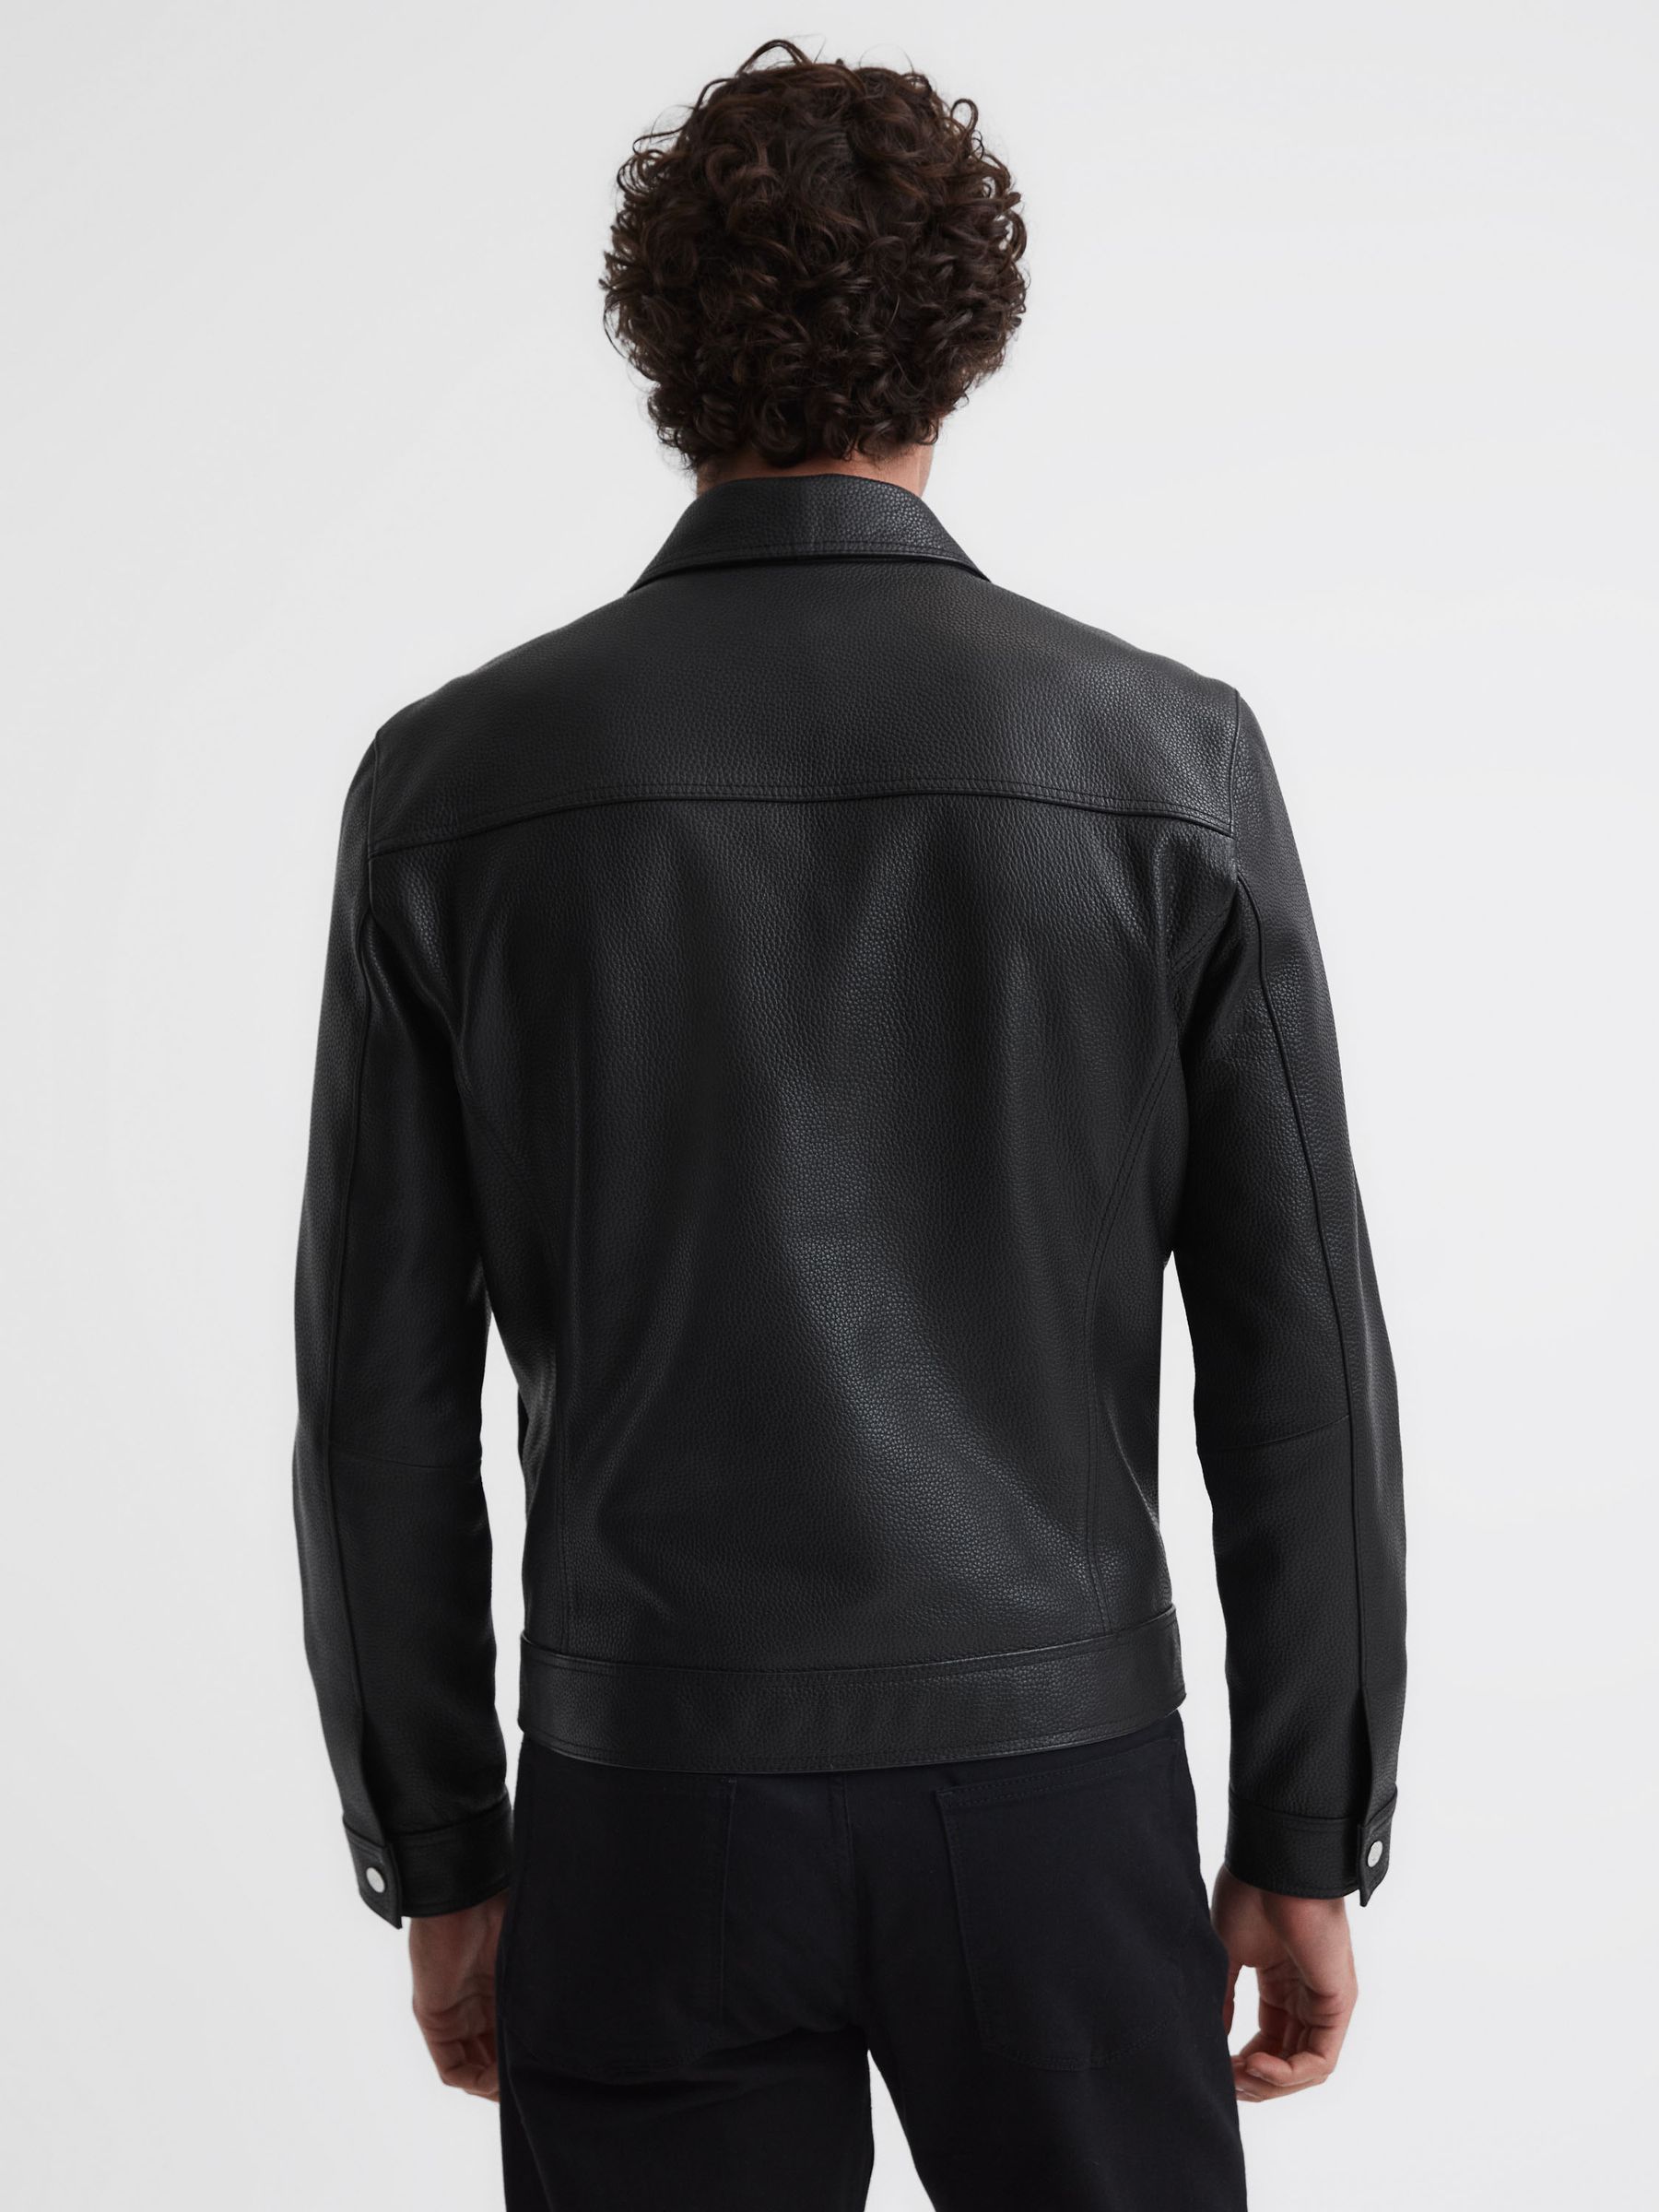 Reiss Carp Leather Zip Through Jacket | REISS Australia